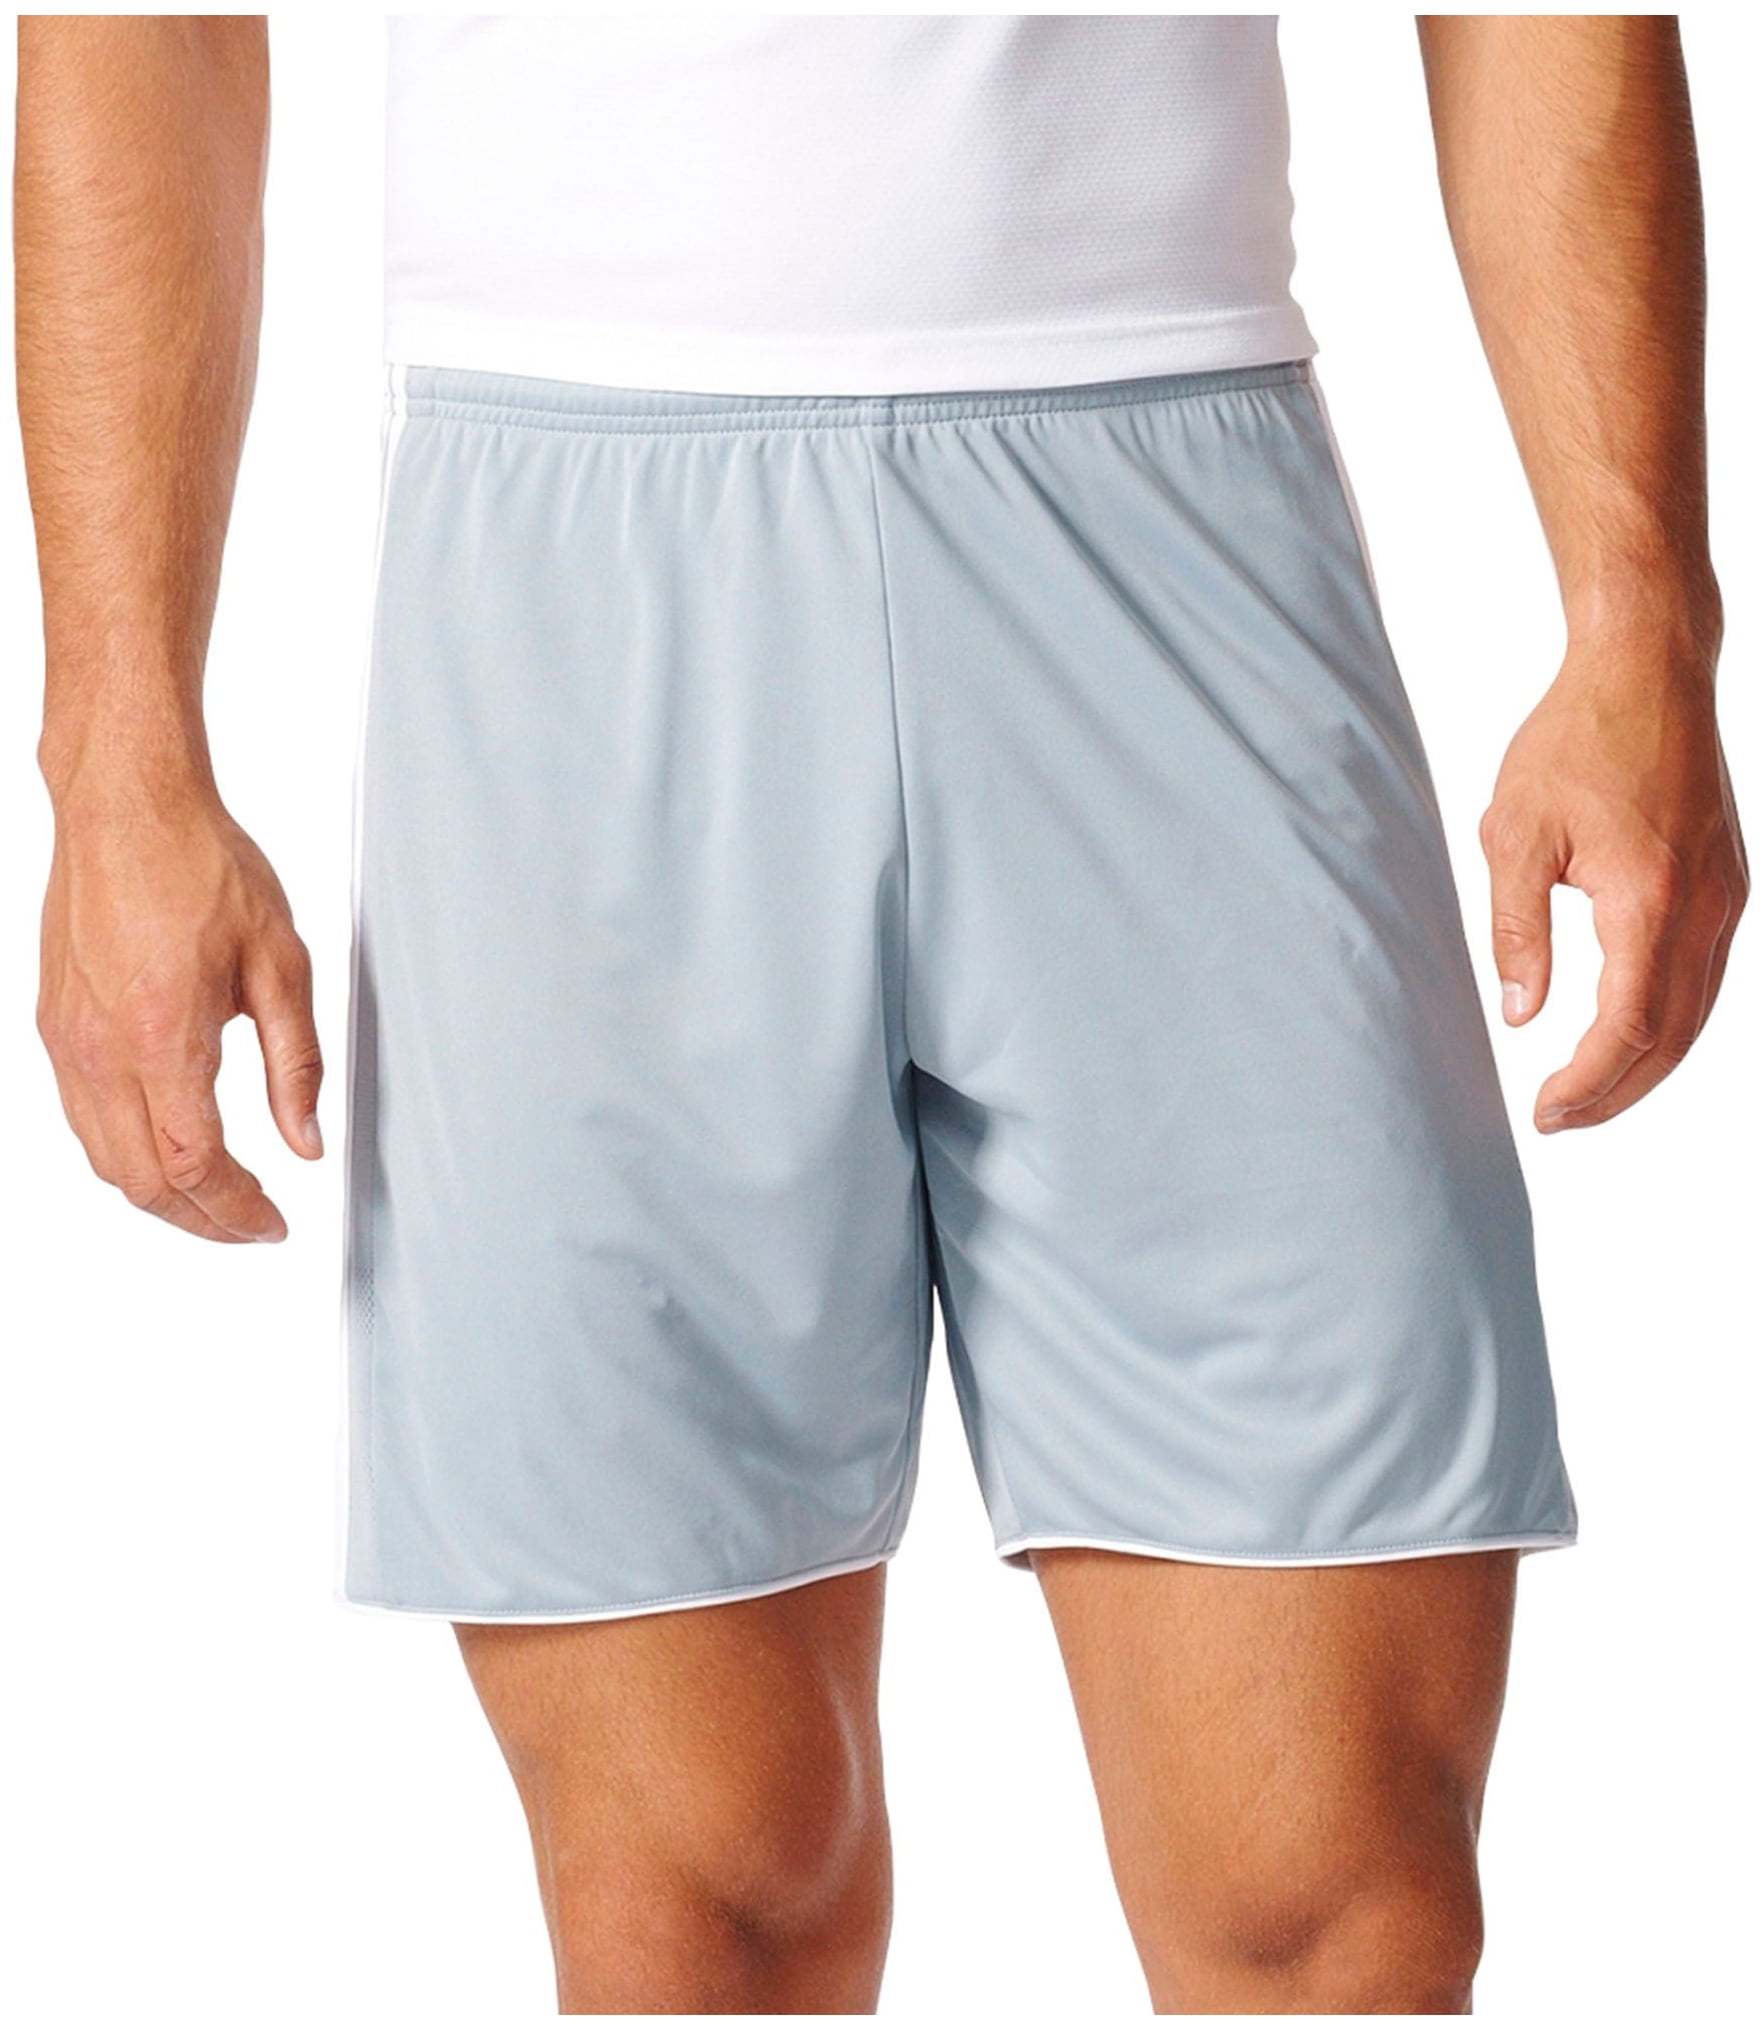 adidas men's tastigo 17 soccer shorts